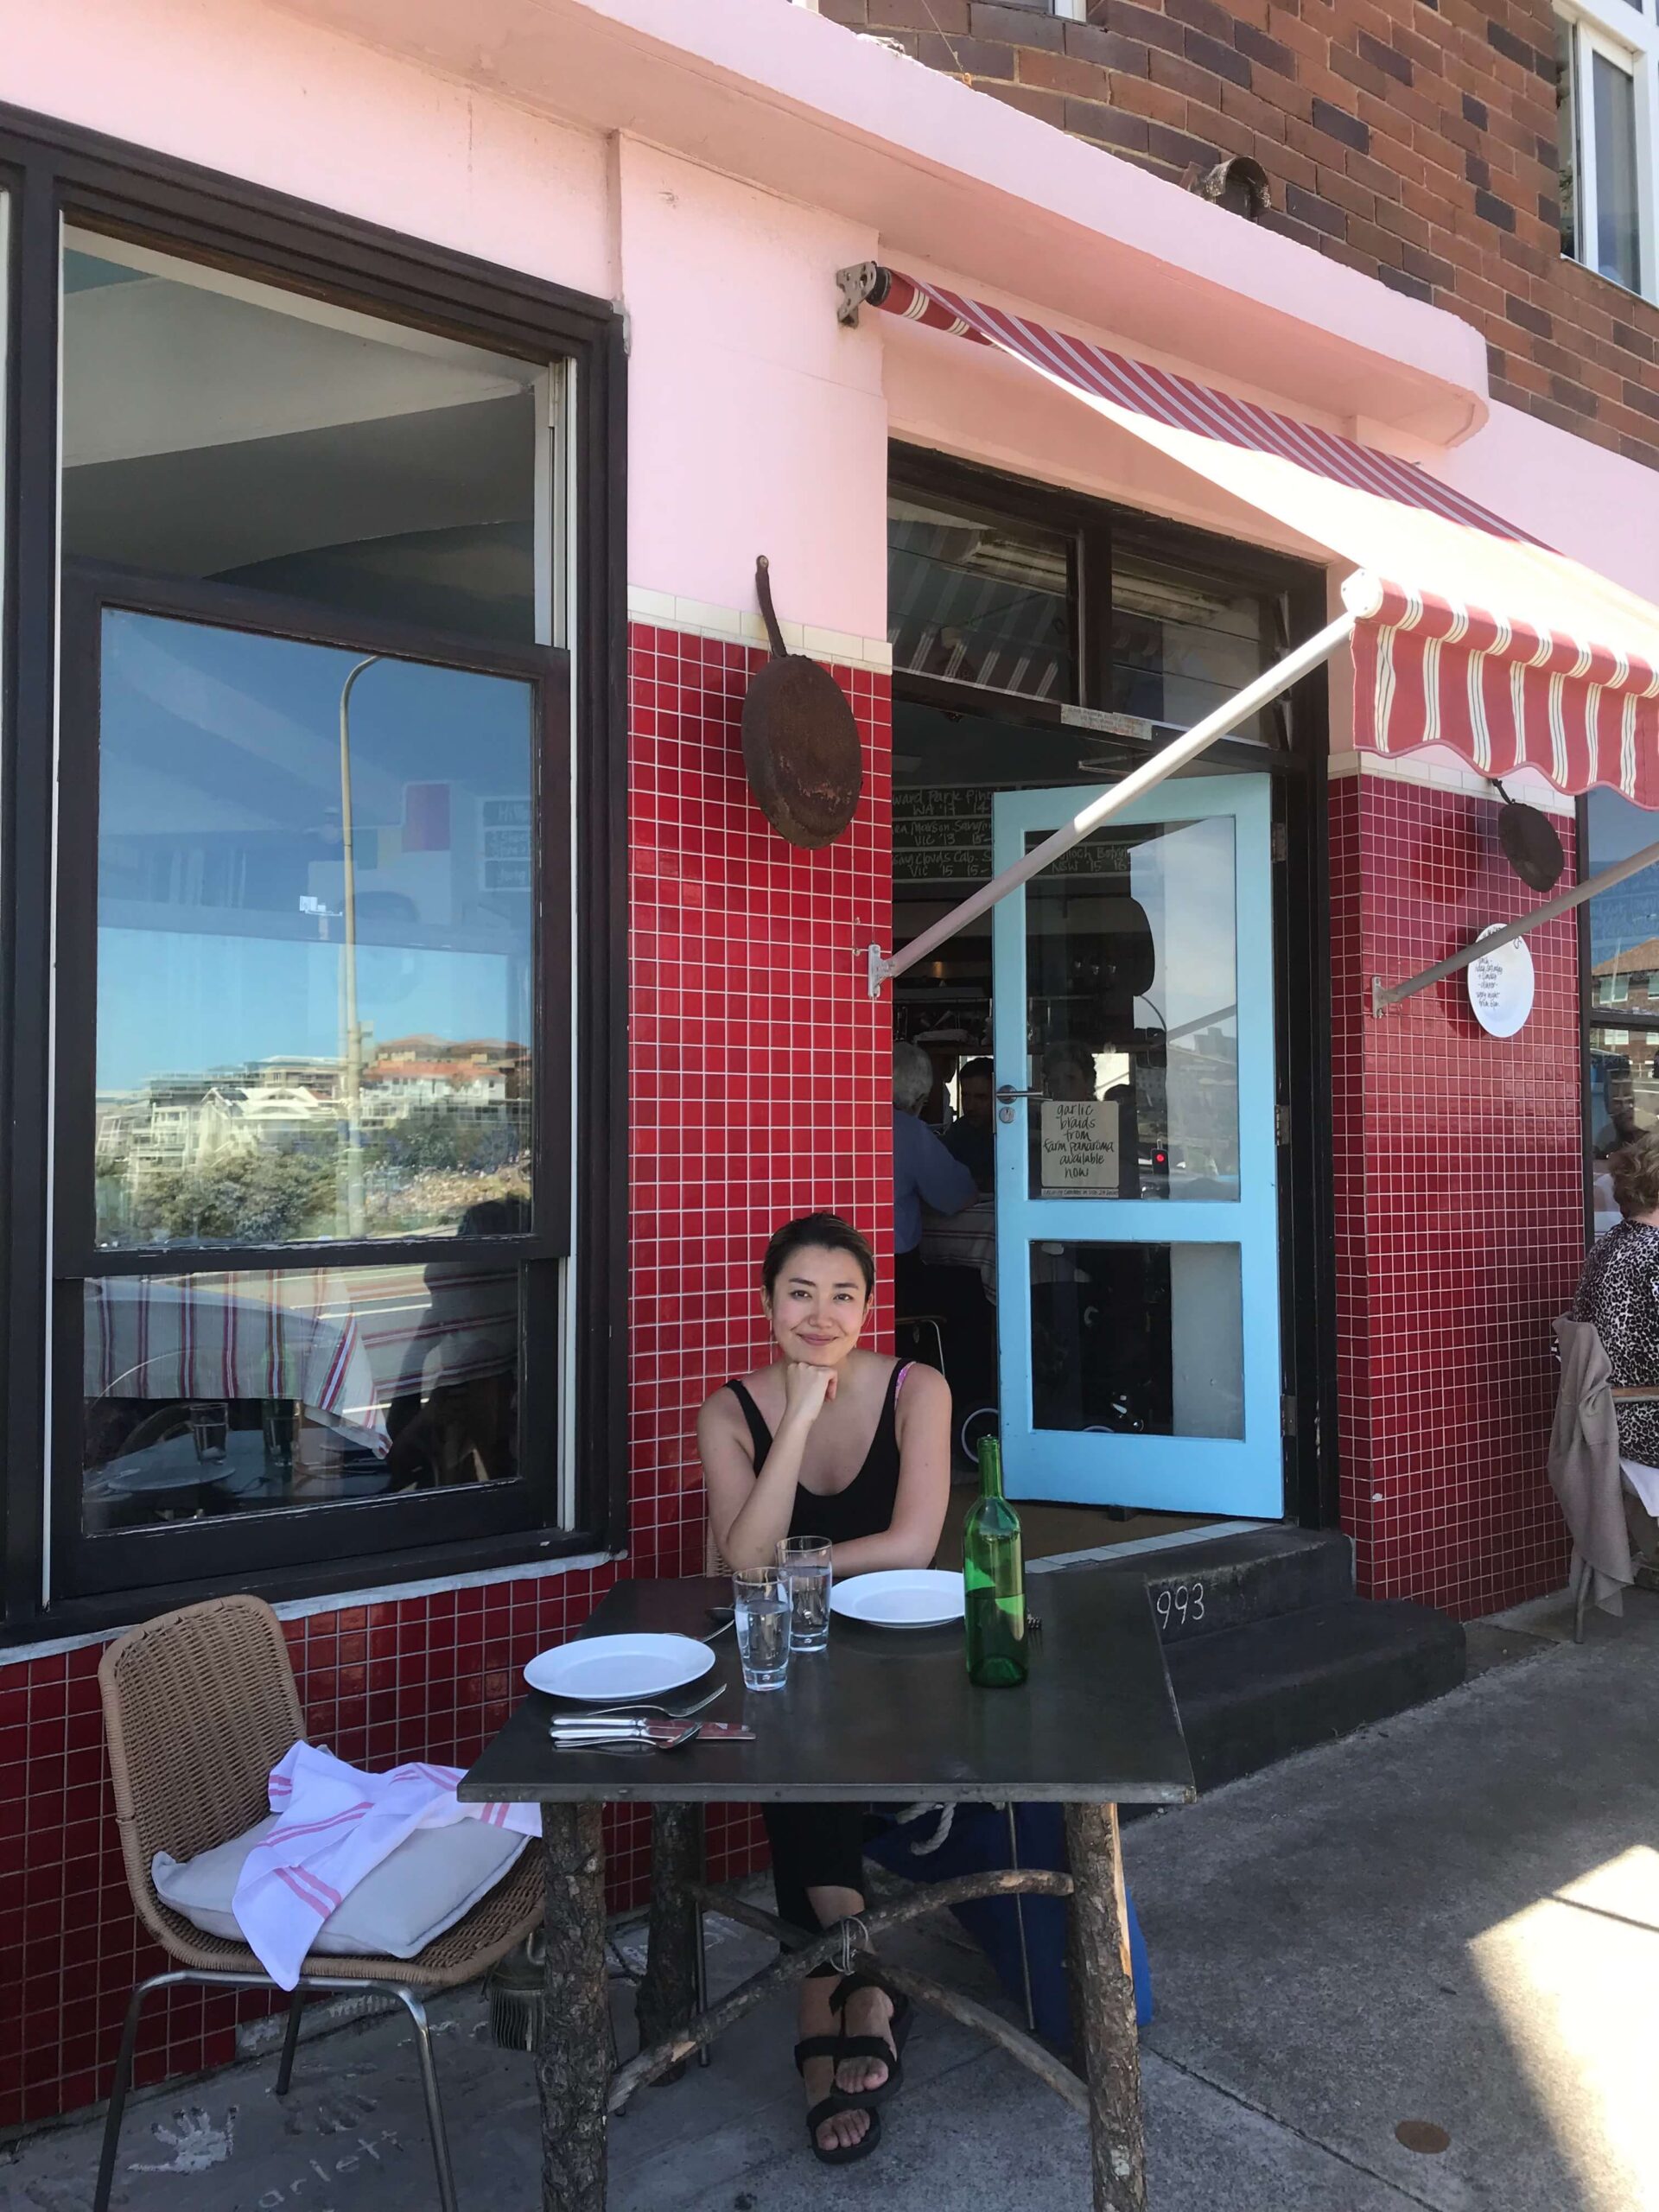 シドニーのレストラン【Sean's】でランチを楽しむ筆者の姿を撮影した写真